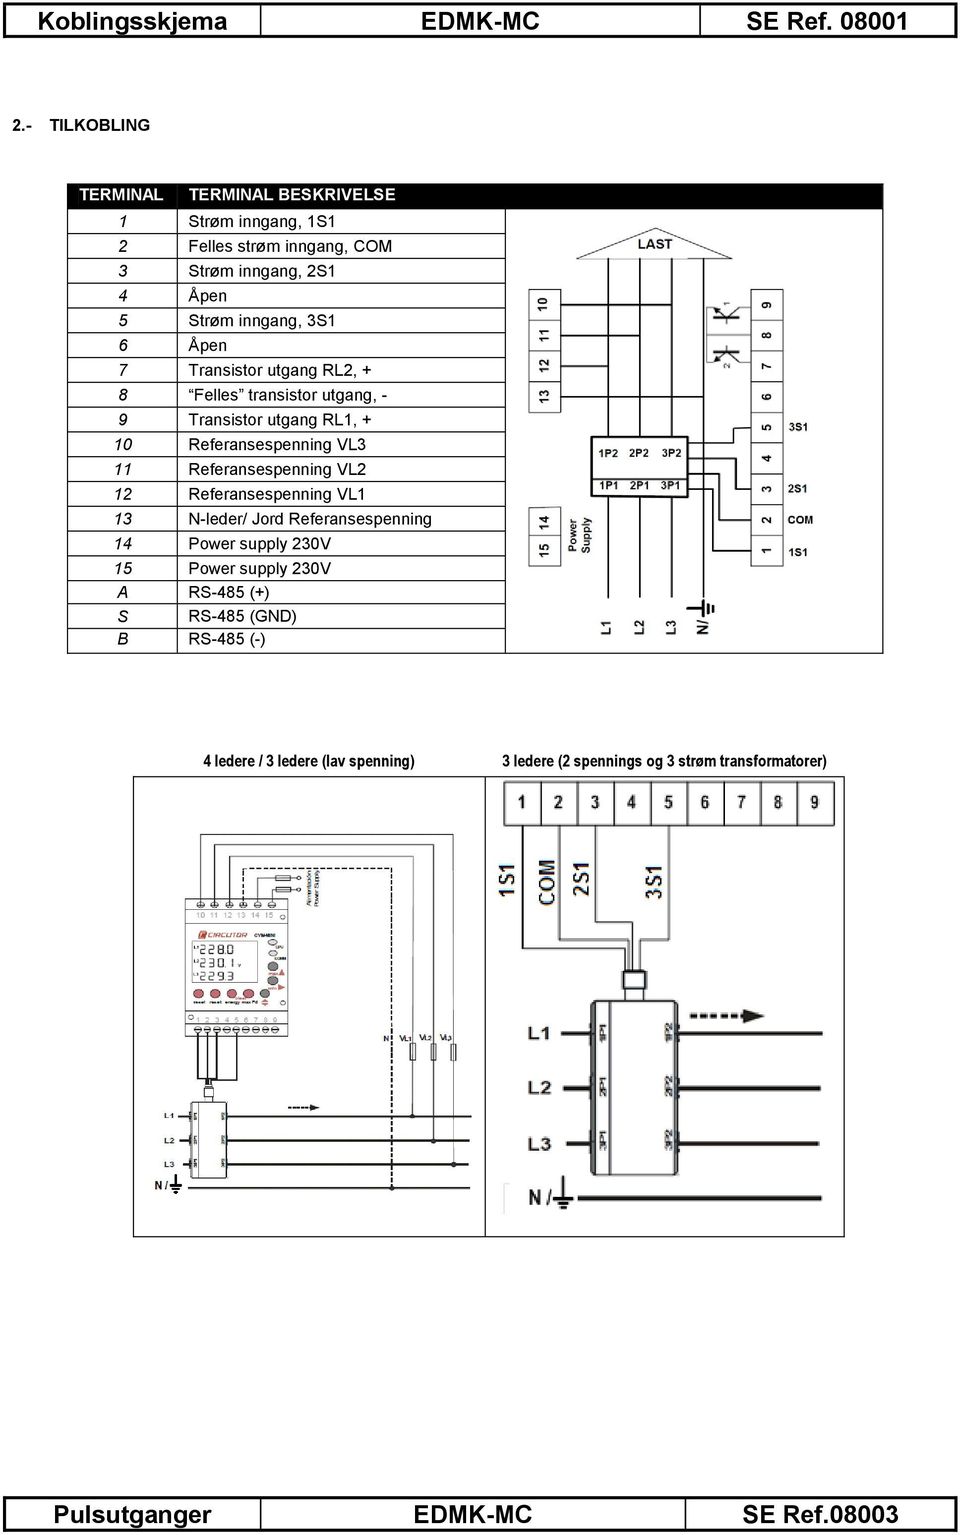 Åpen 7 Transistor utgang RL2, + 8 Felles transistor utgang, - 9 Transistor utgang RL1, + 10 Referansespenning VL3 11 Referansespenning VL2 12